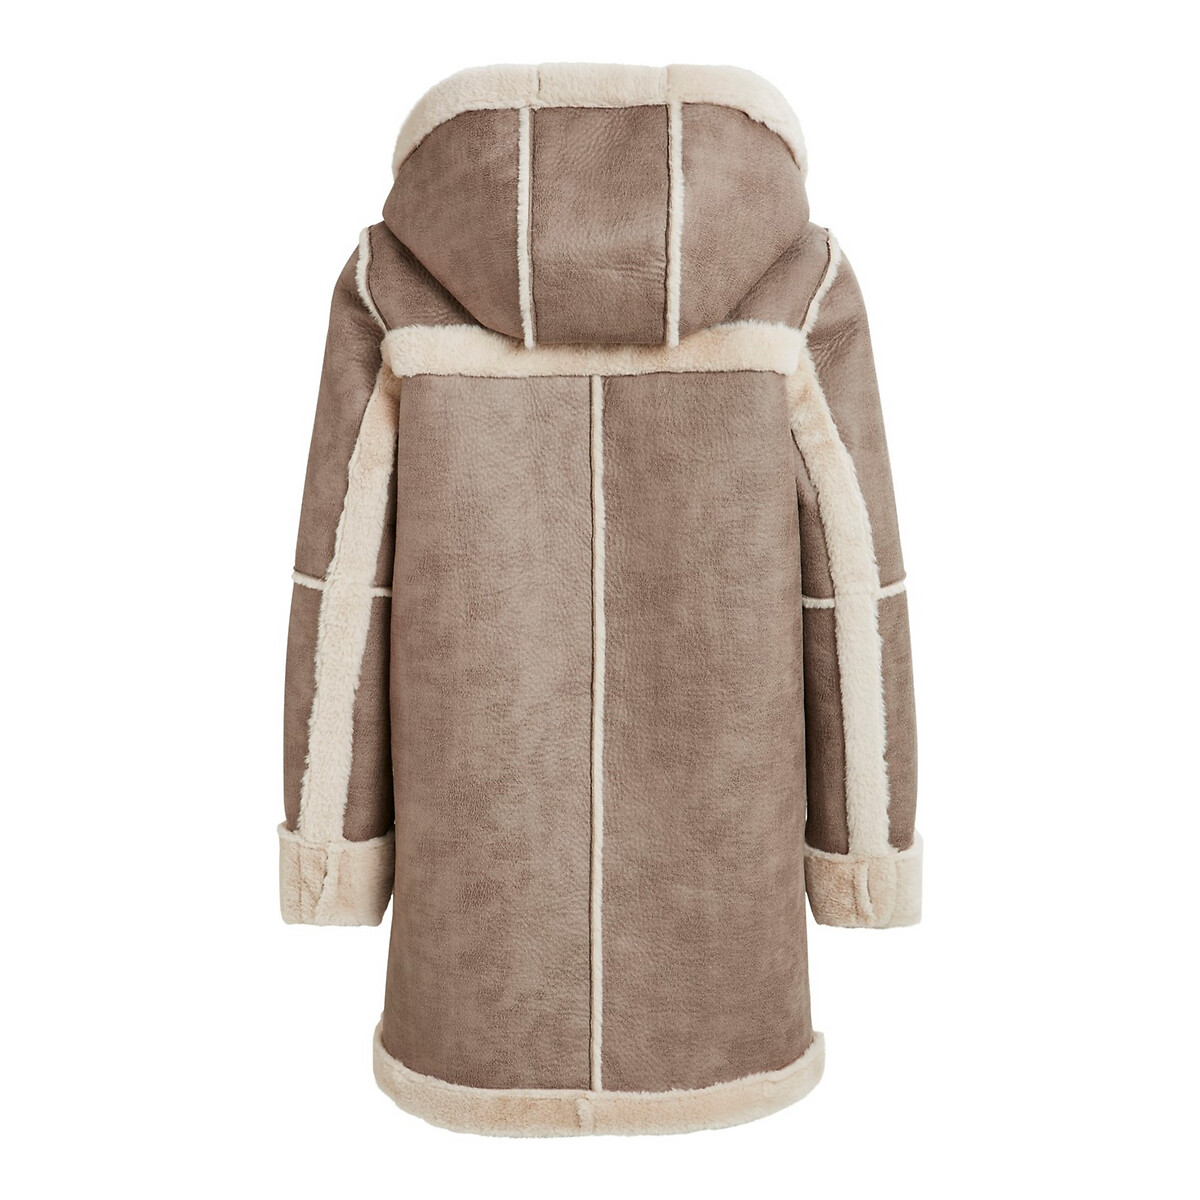 Пальто La Redoute С капюшоном под кожу мутон 34 (FR) - 40 (RUS) каштановый, размер 34 (FR) - 40 (RUS) С капюшоном под кожу мутон 34 (FR) - 40 (RUS) каштановый - фото 2